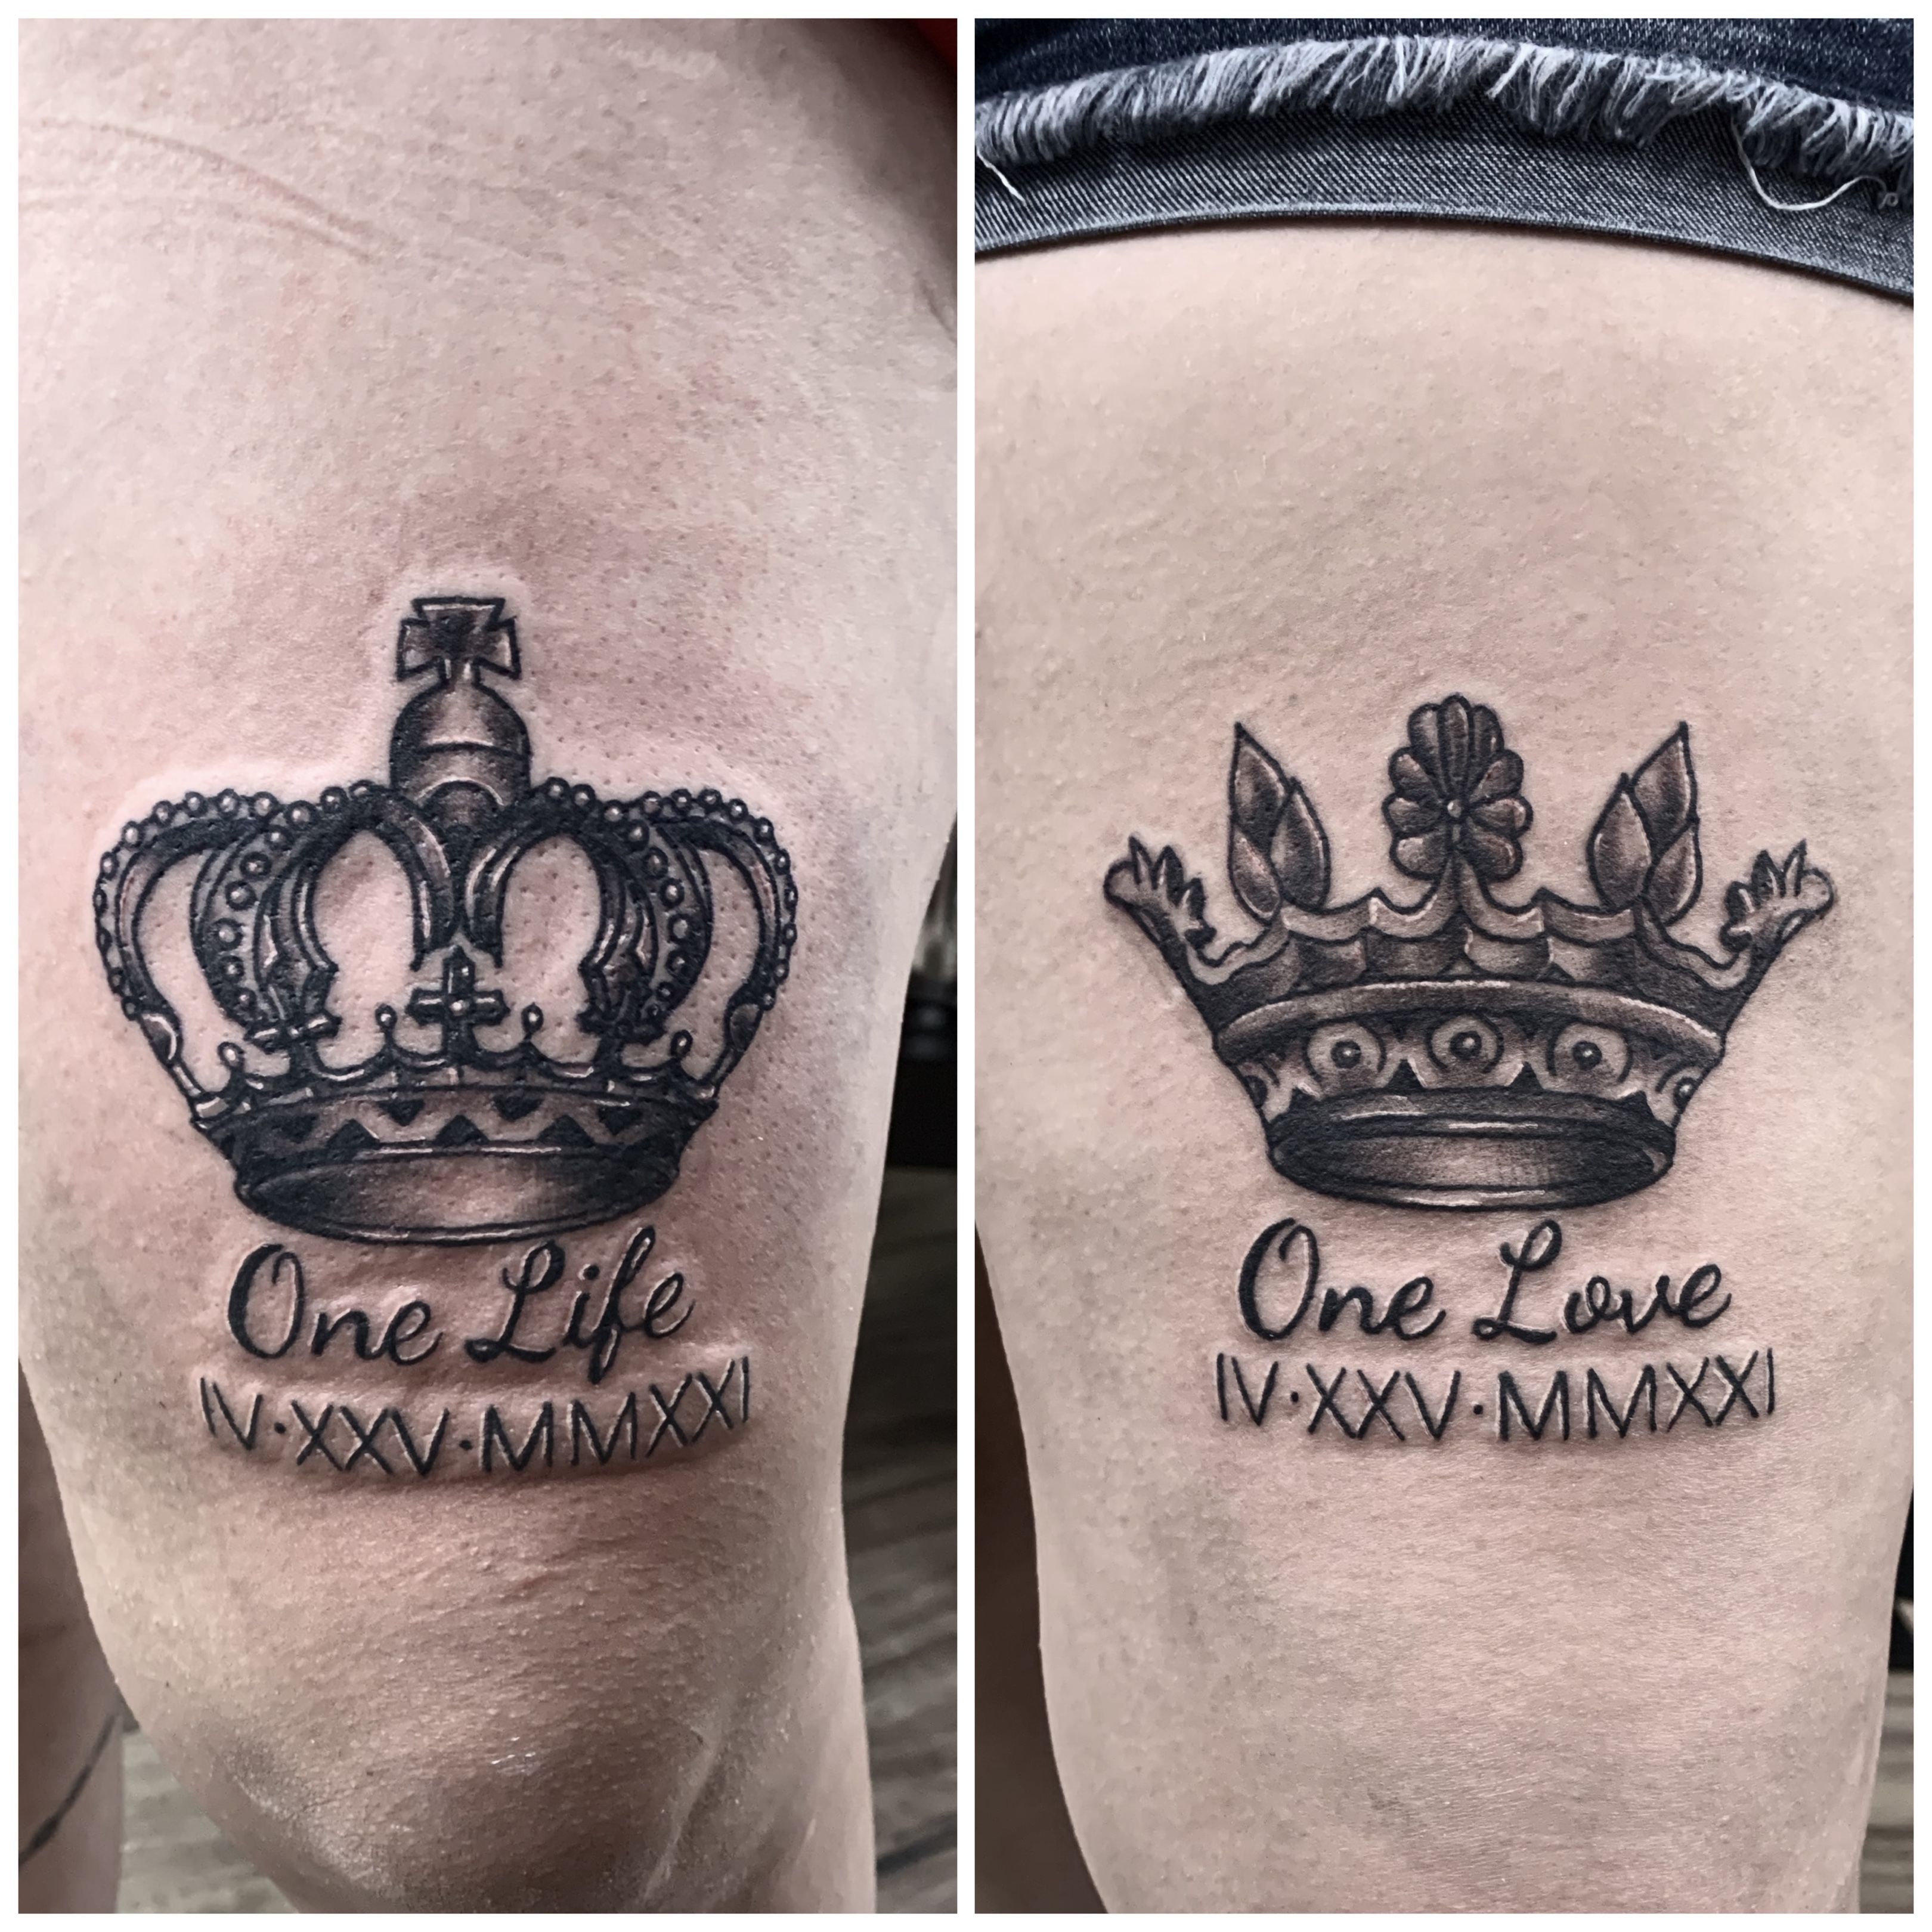 Kinglines Tattoo Studio - Ornamental Crown Tattoo For appointments-  9620713446 www.kinglinestattoo.com #ornamental #best #crown #tattoo #queen  #prince #princess #inked #inkedup #inkedgirls #kinglinestattoo  #tattoostudio #tattooartist ...